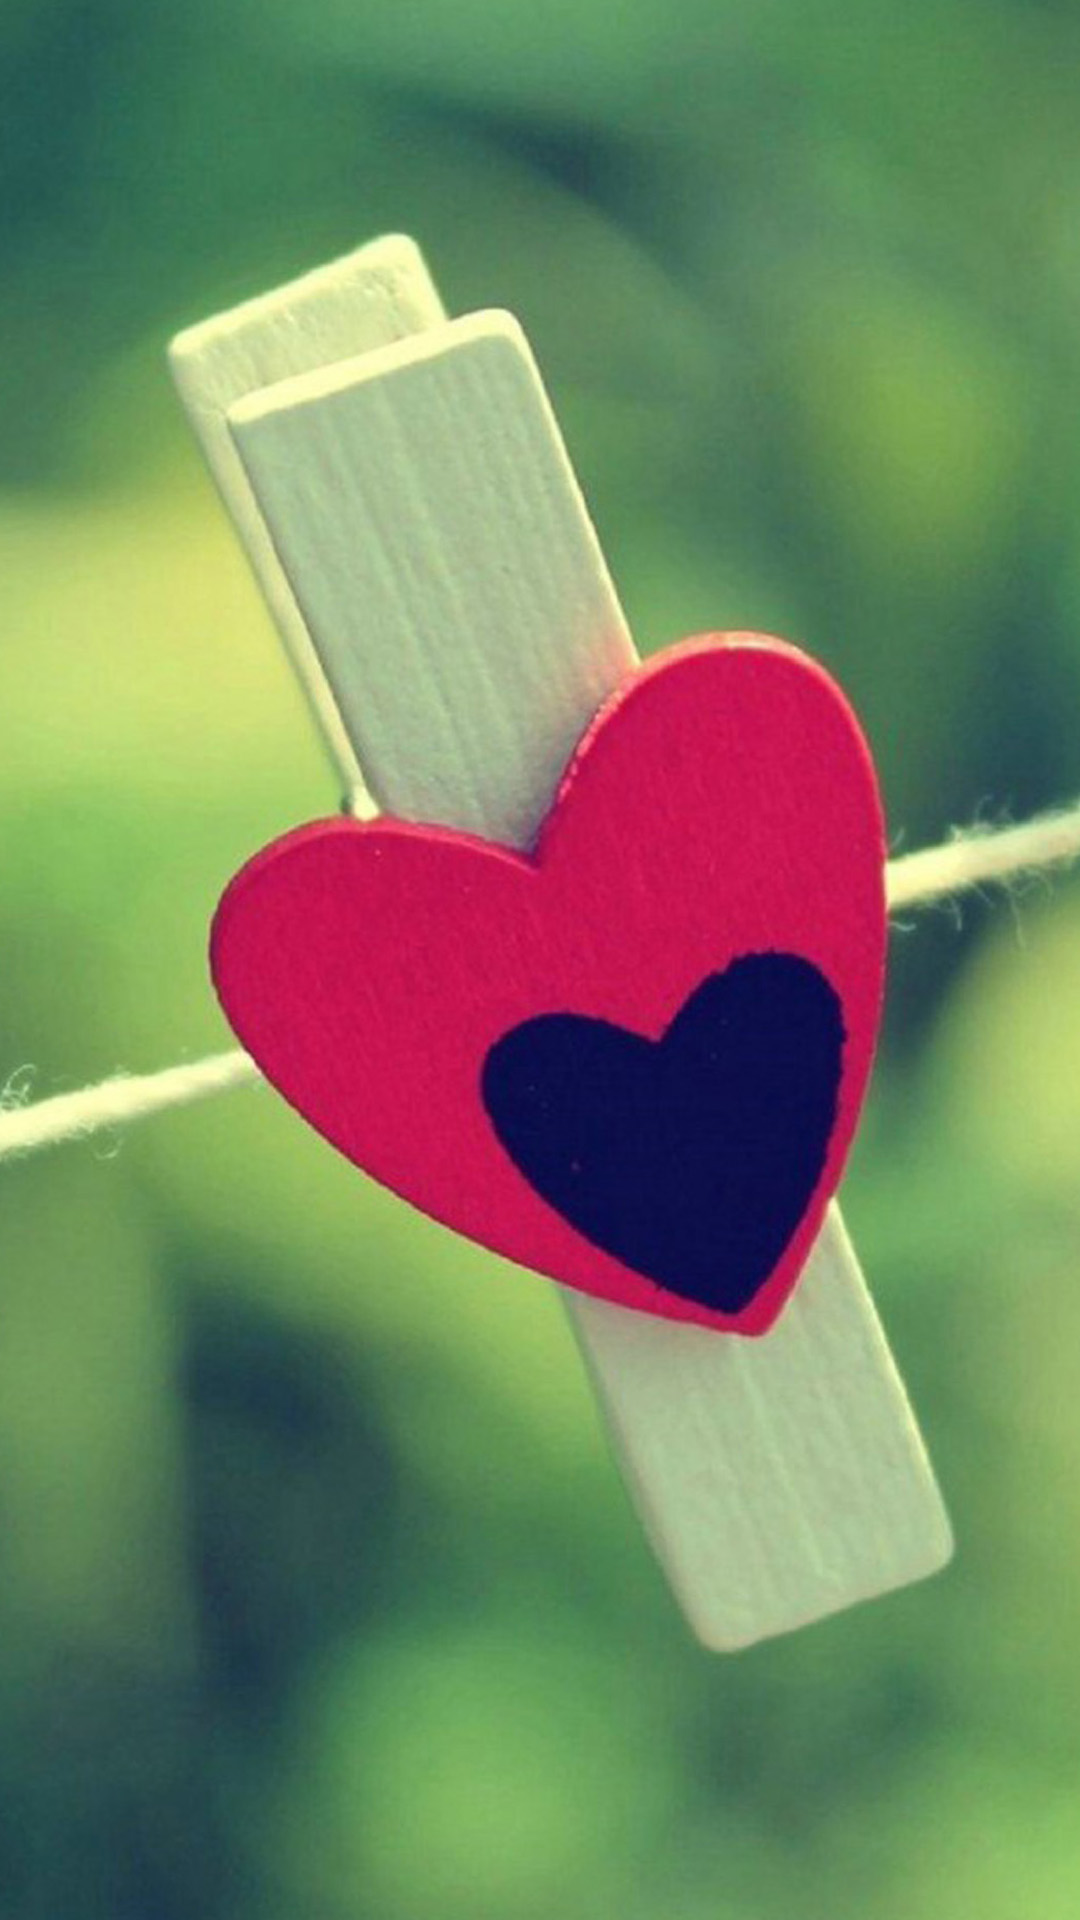 fonds d'écran d'amour full hd pour mobile,cœur,rouge,amour,rose,police de caractère